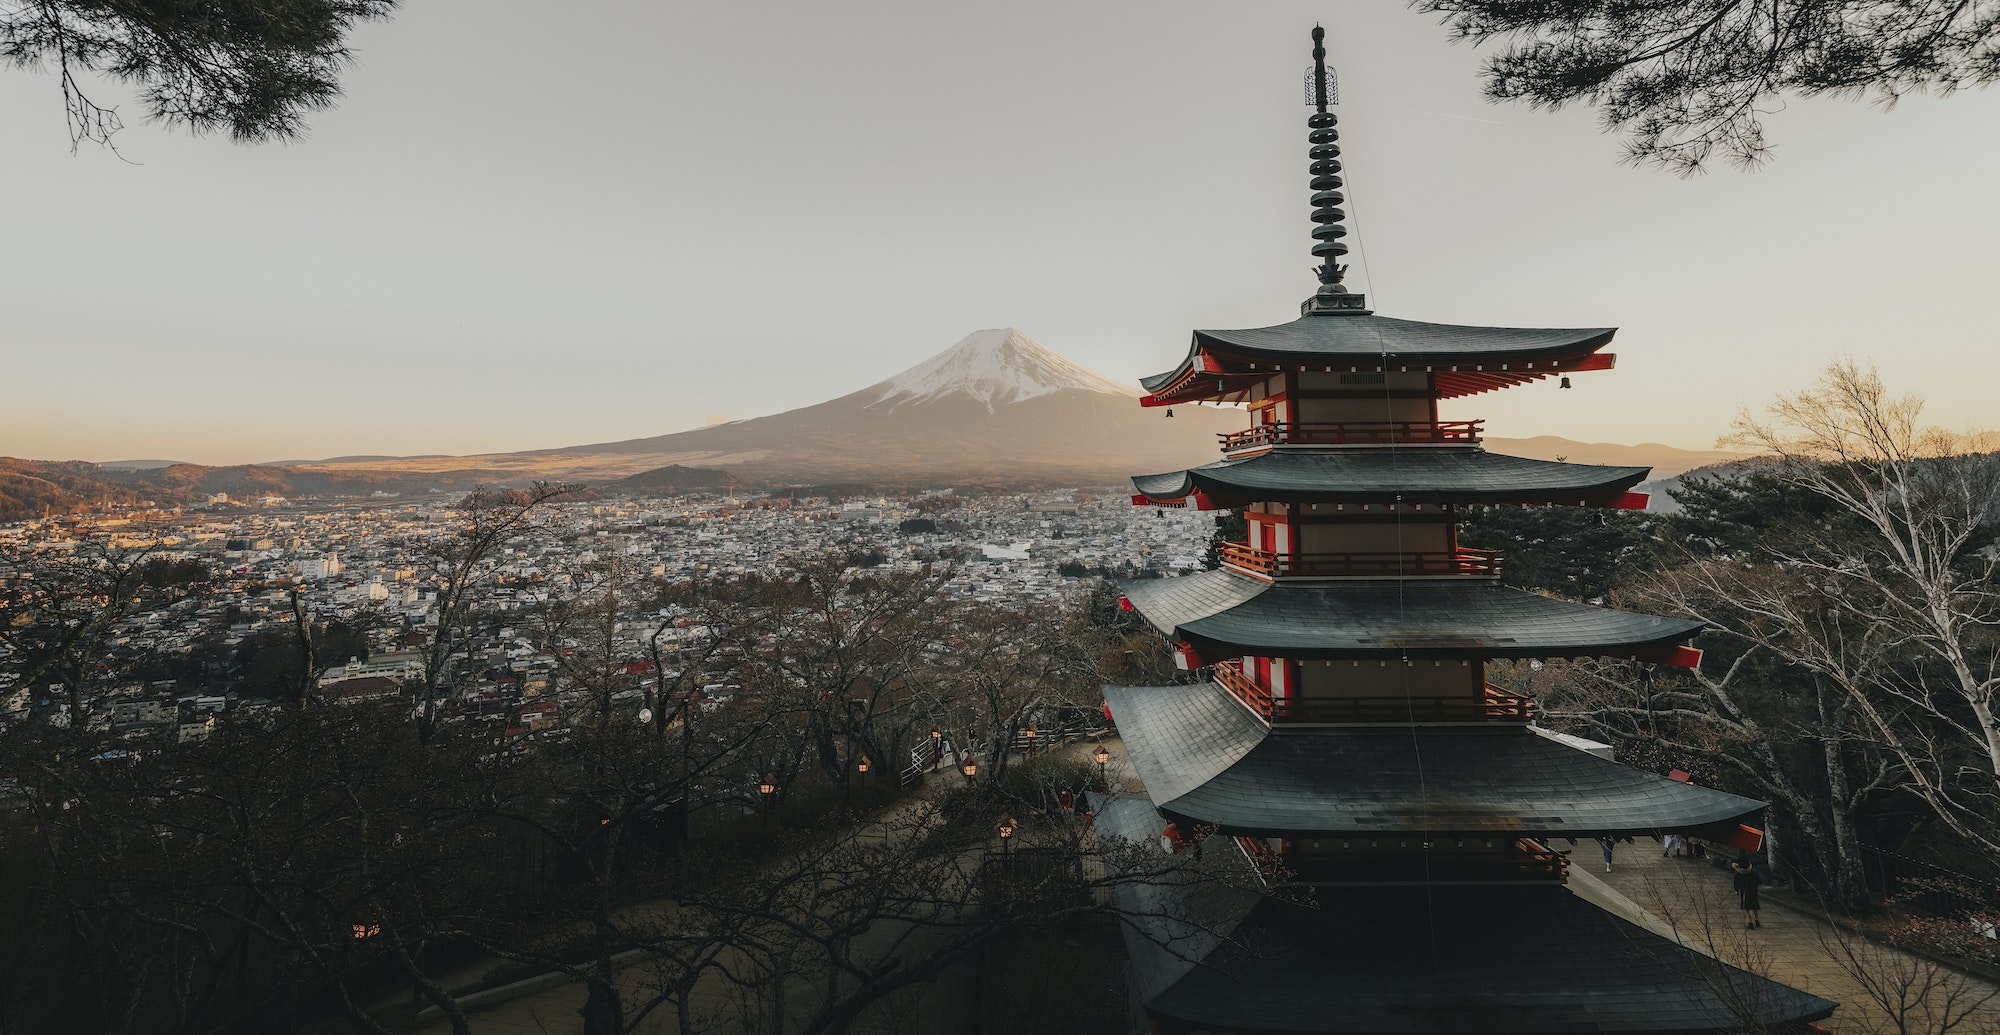 View of Mt. Fuji and Chureito pagoda in Tokyo, Japan